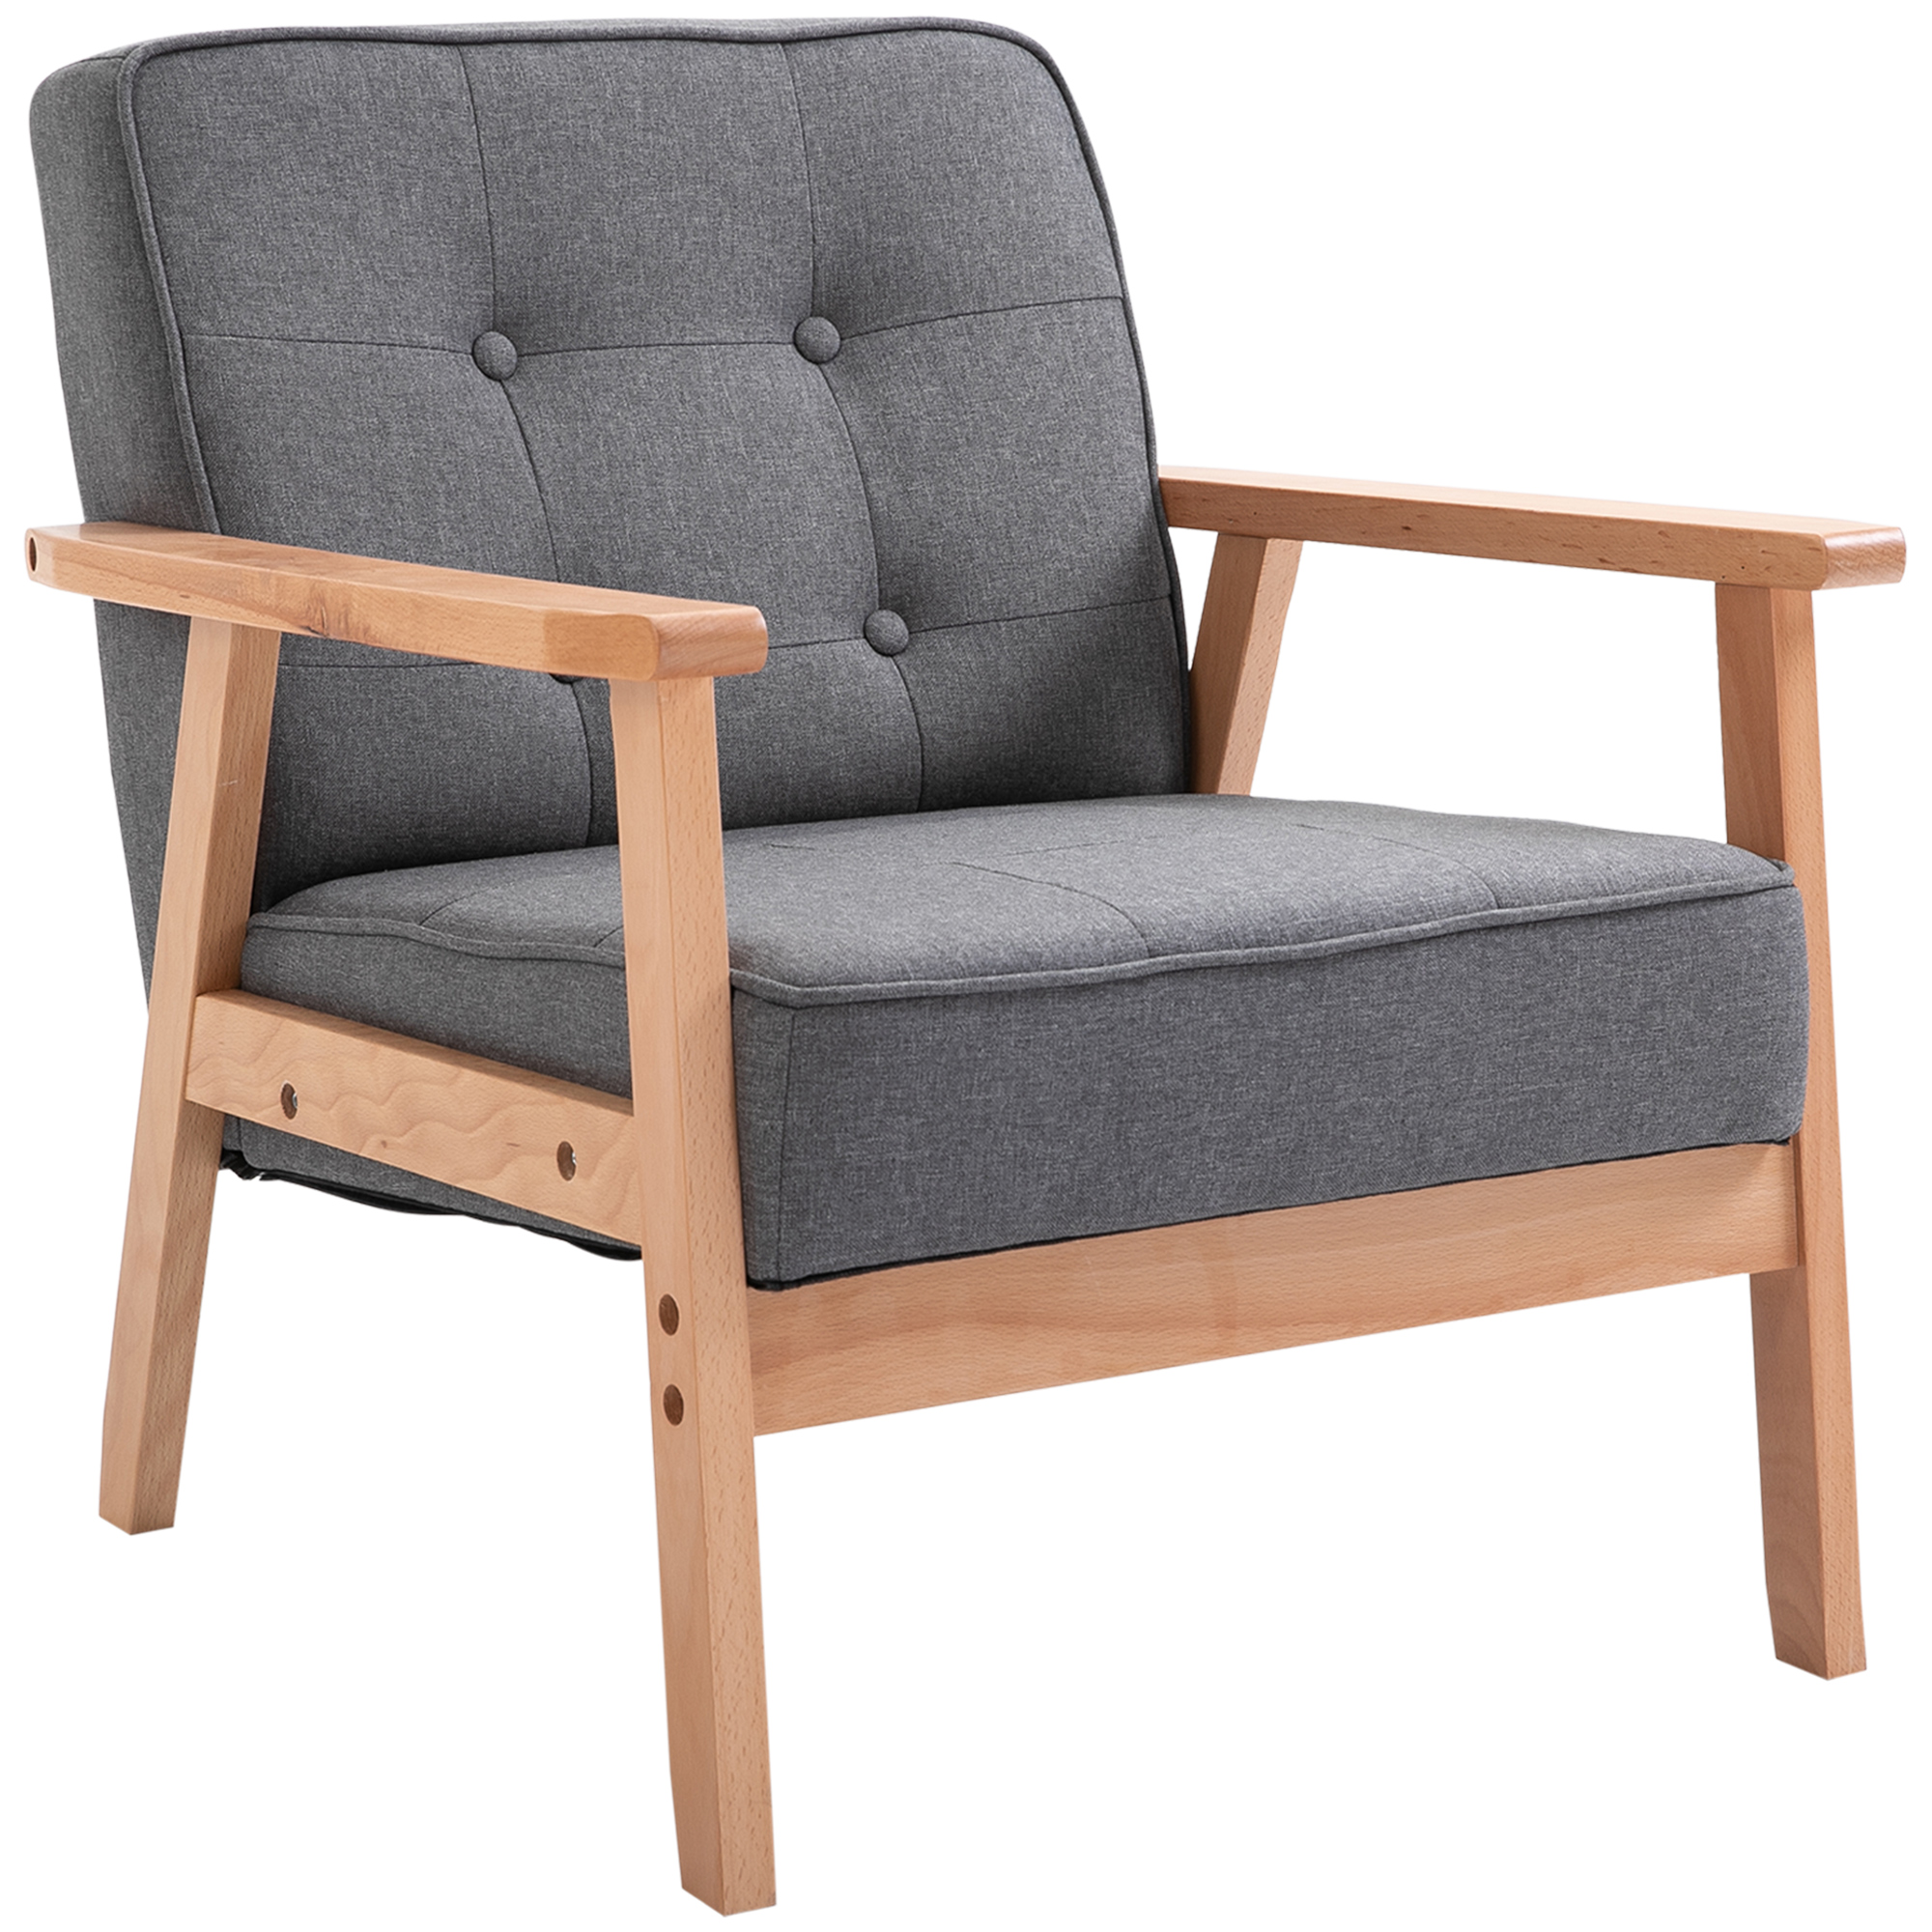 HOMCOM silla mecedora con reposapiés sillón de relax silla ocio